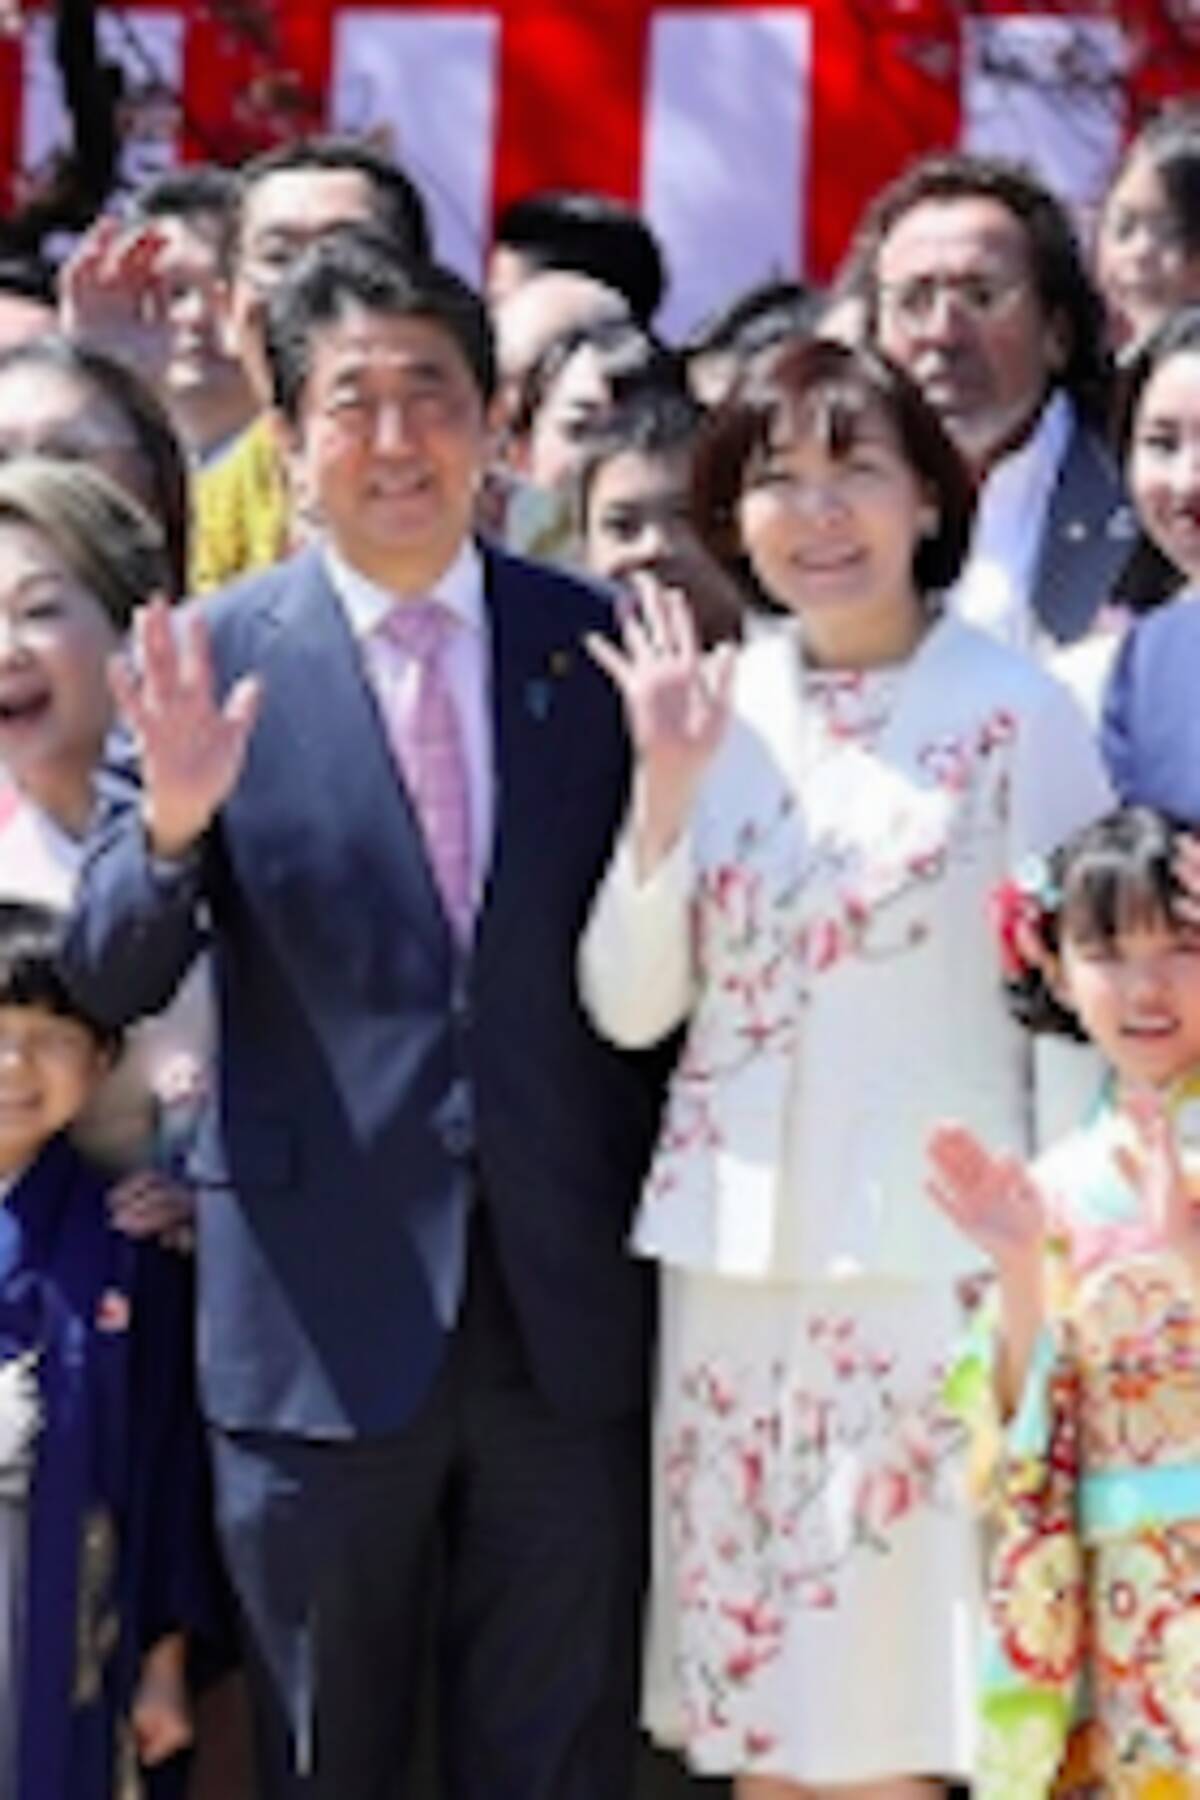 桜を見る会 で昭恵夫人 菅官房長官と仲良く写真を撮っていた 大物半グレ が逮捕されていた 昭恵夫人との写真が営業ツールに 2020年7月9日 エキサイトニュース